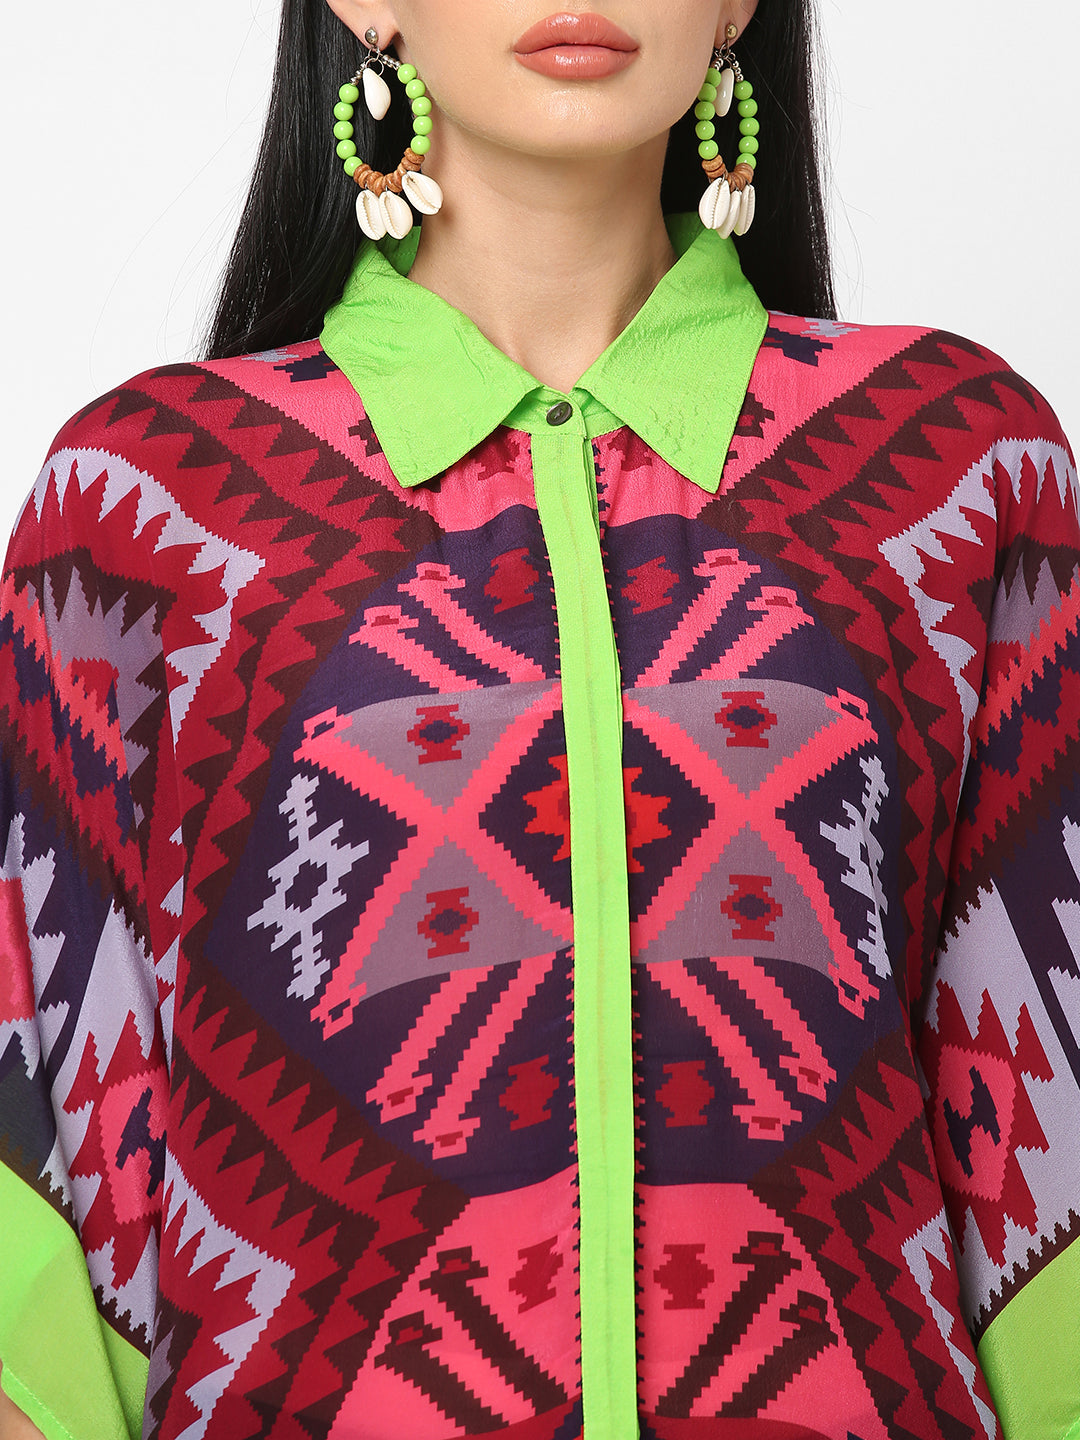 Pink & Lime Kilim Printed Shirt Style Kaftan Tunic